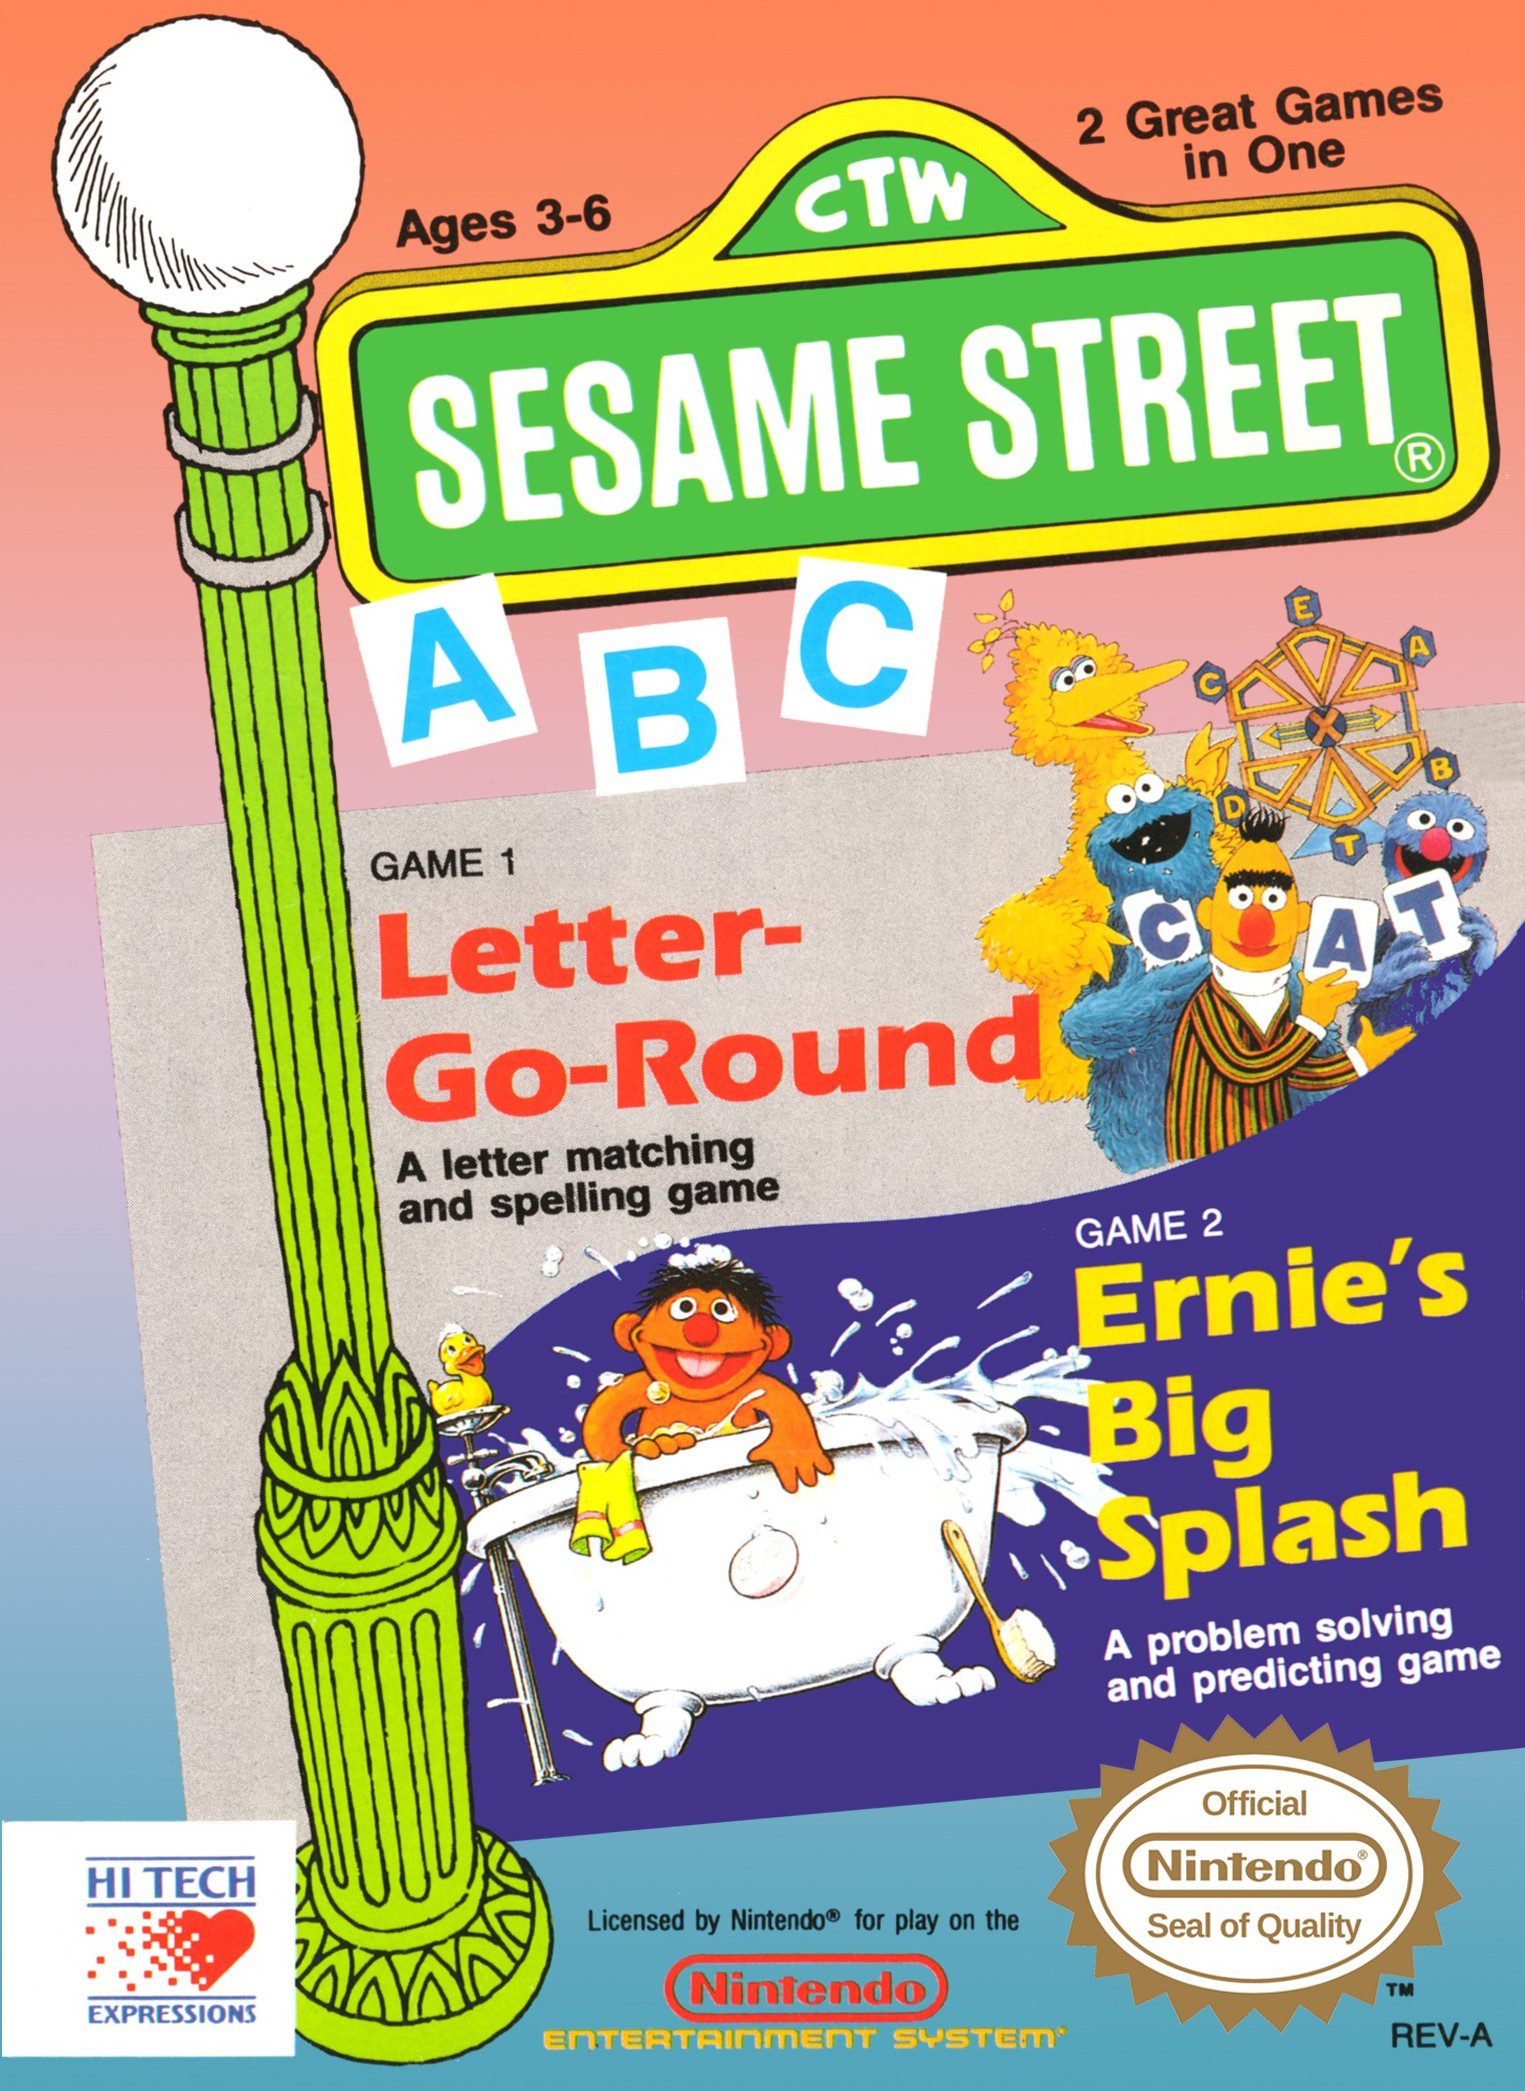 Sesame Street A-B-C for Nintendo Entertainment System (NES)